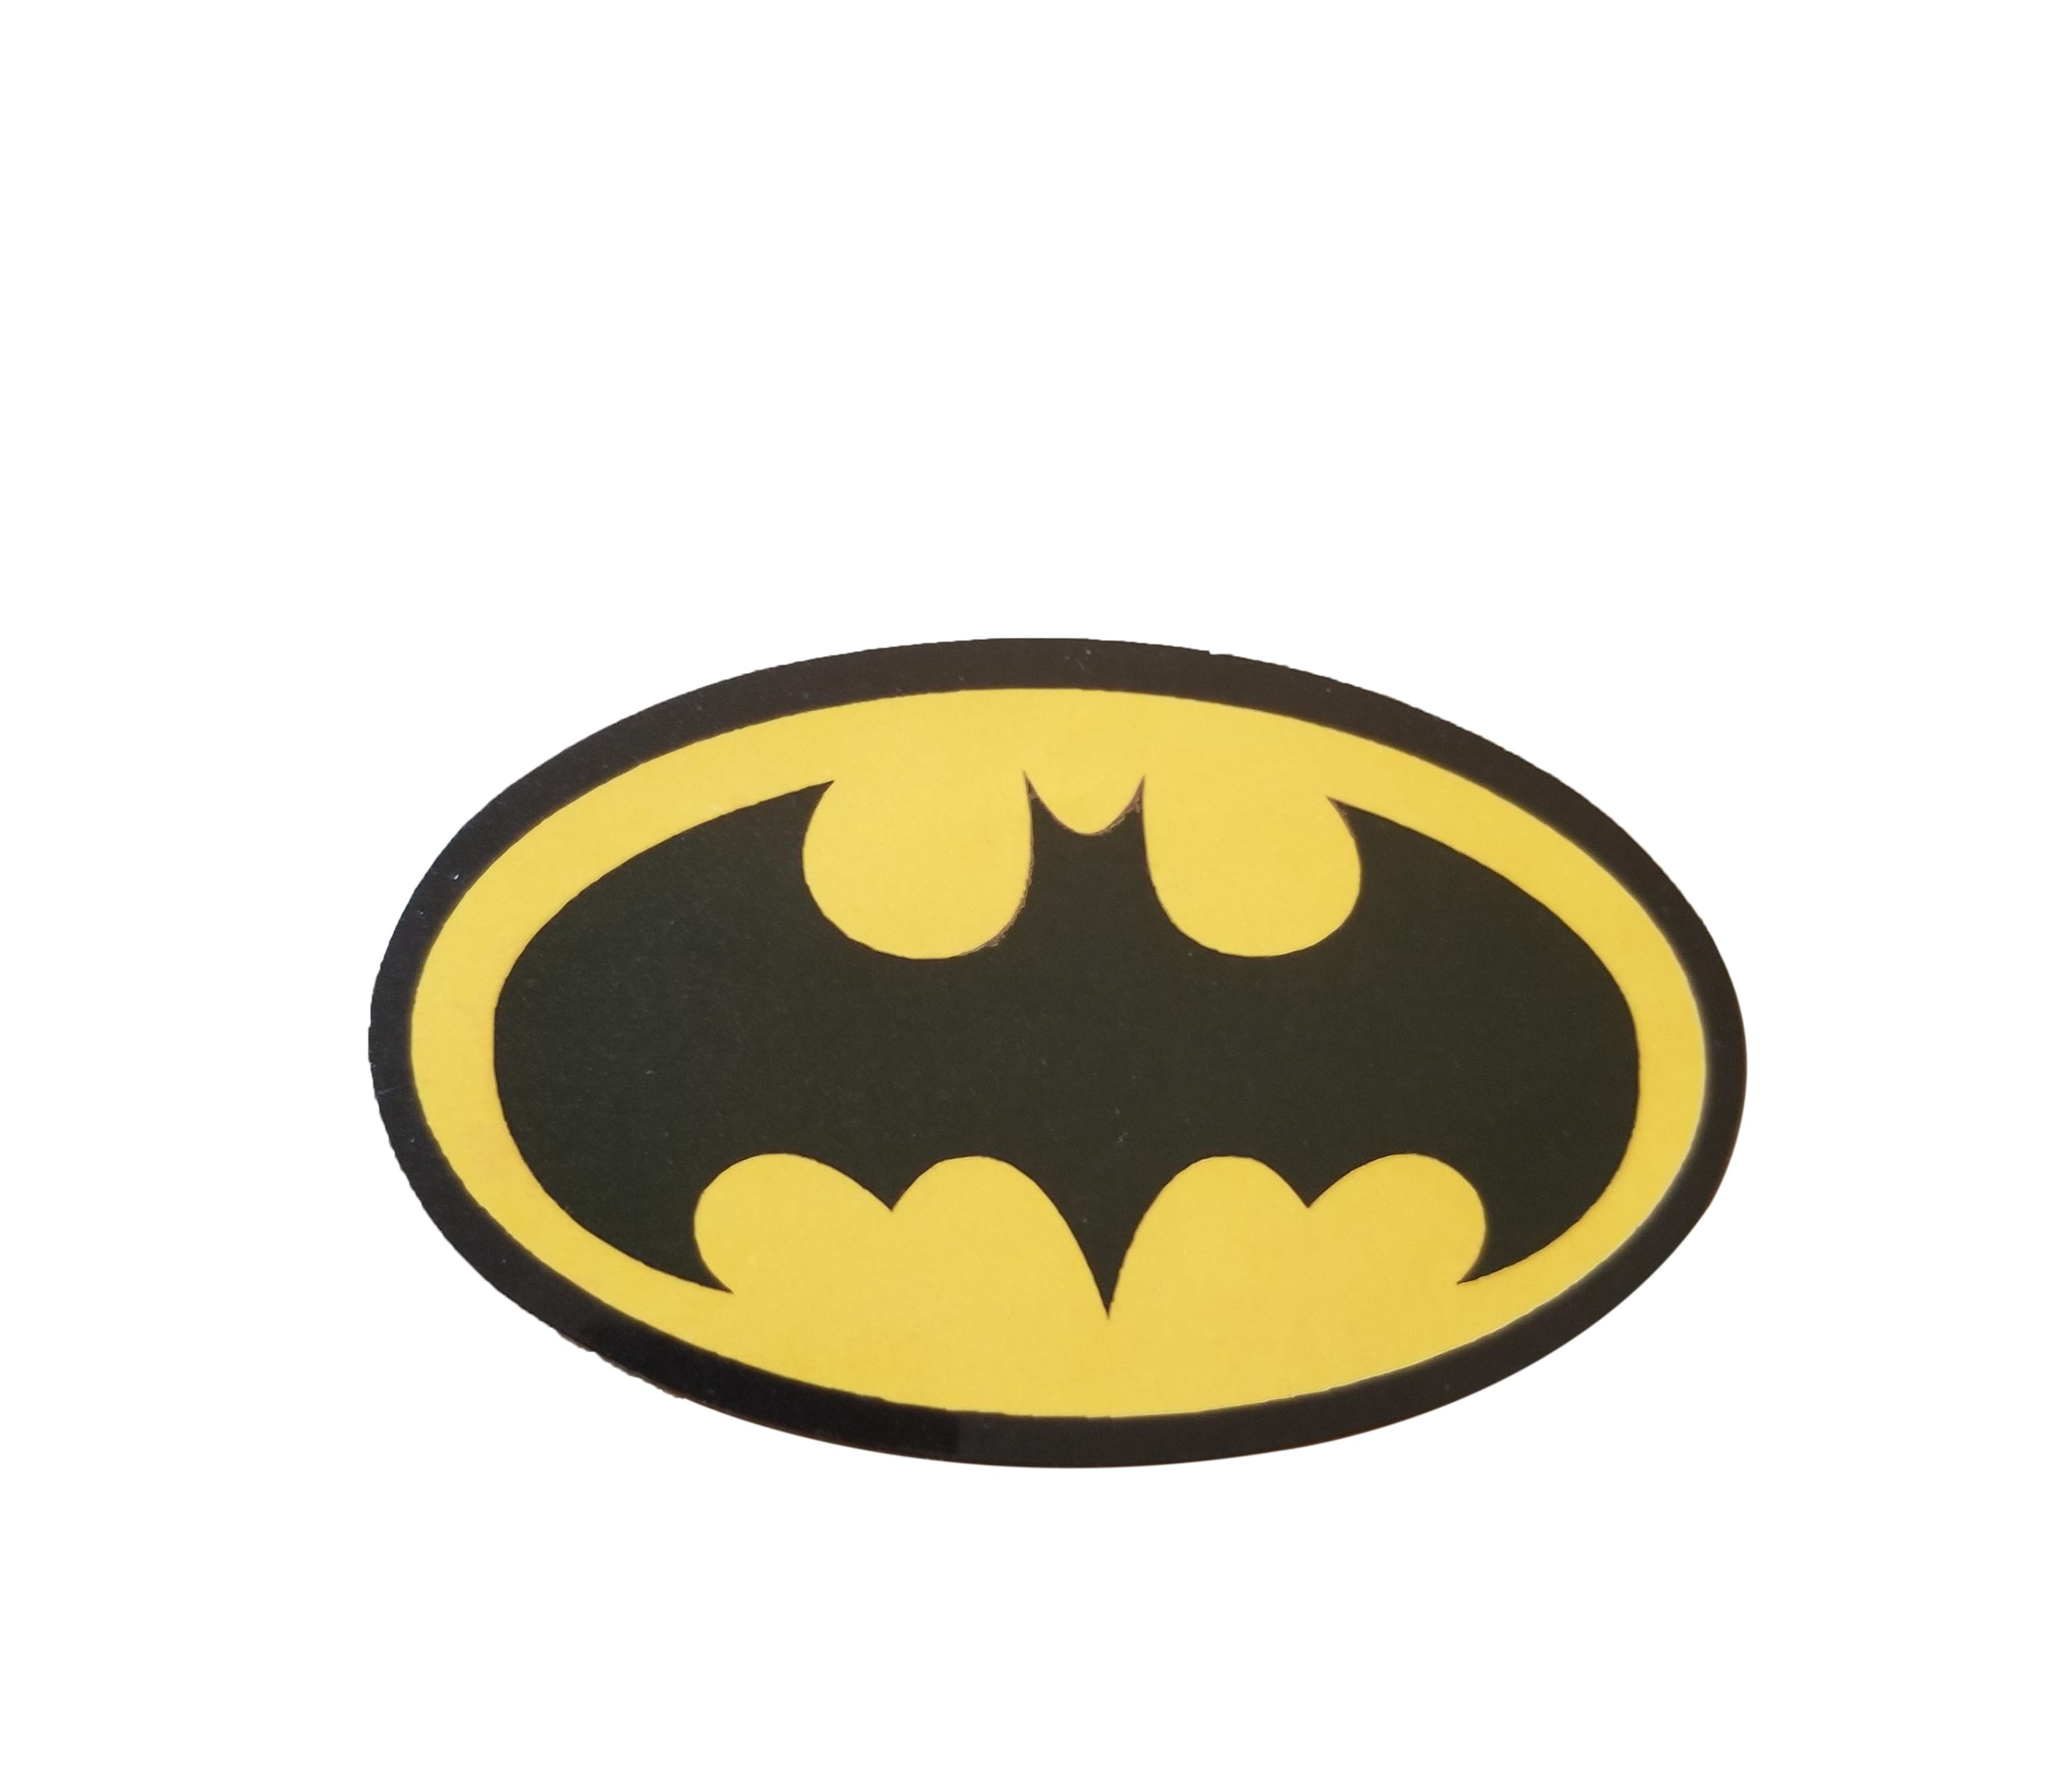 Original Superhero Logo - Original Black and Yellow Batman Logo Sticker, Bat Emblem